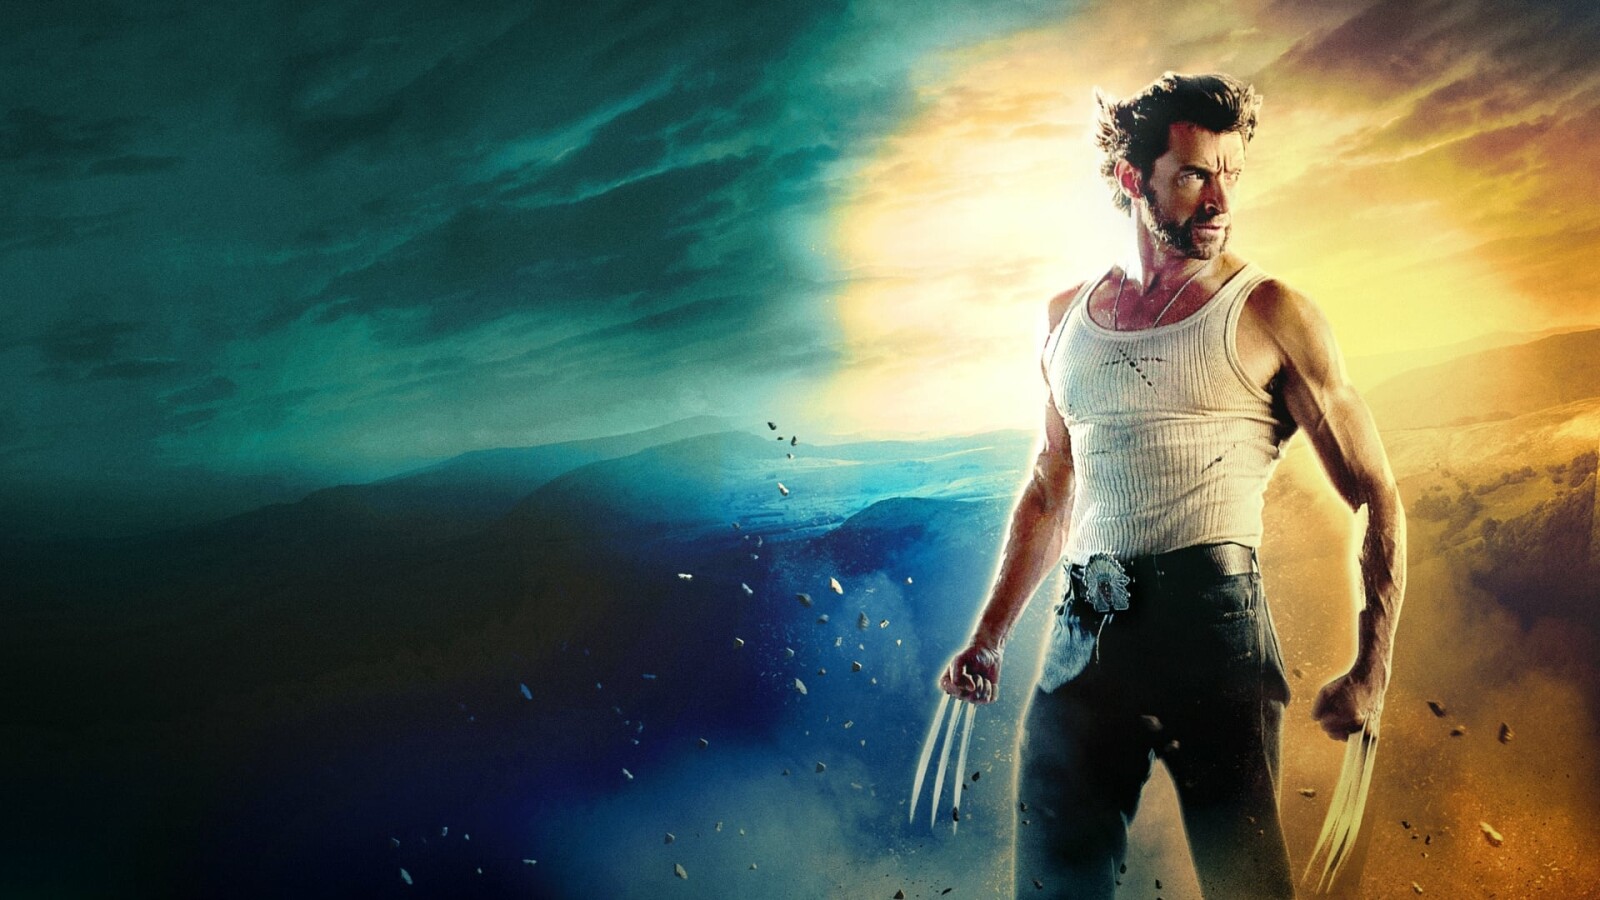 Logan - Liebe Marvel-Filme, lernt von diesem Wolverine